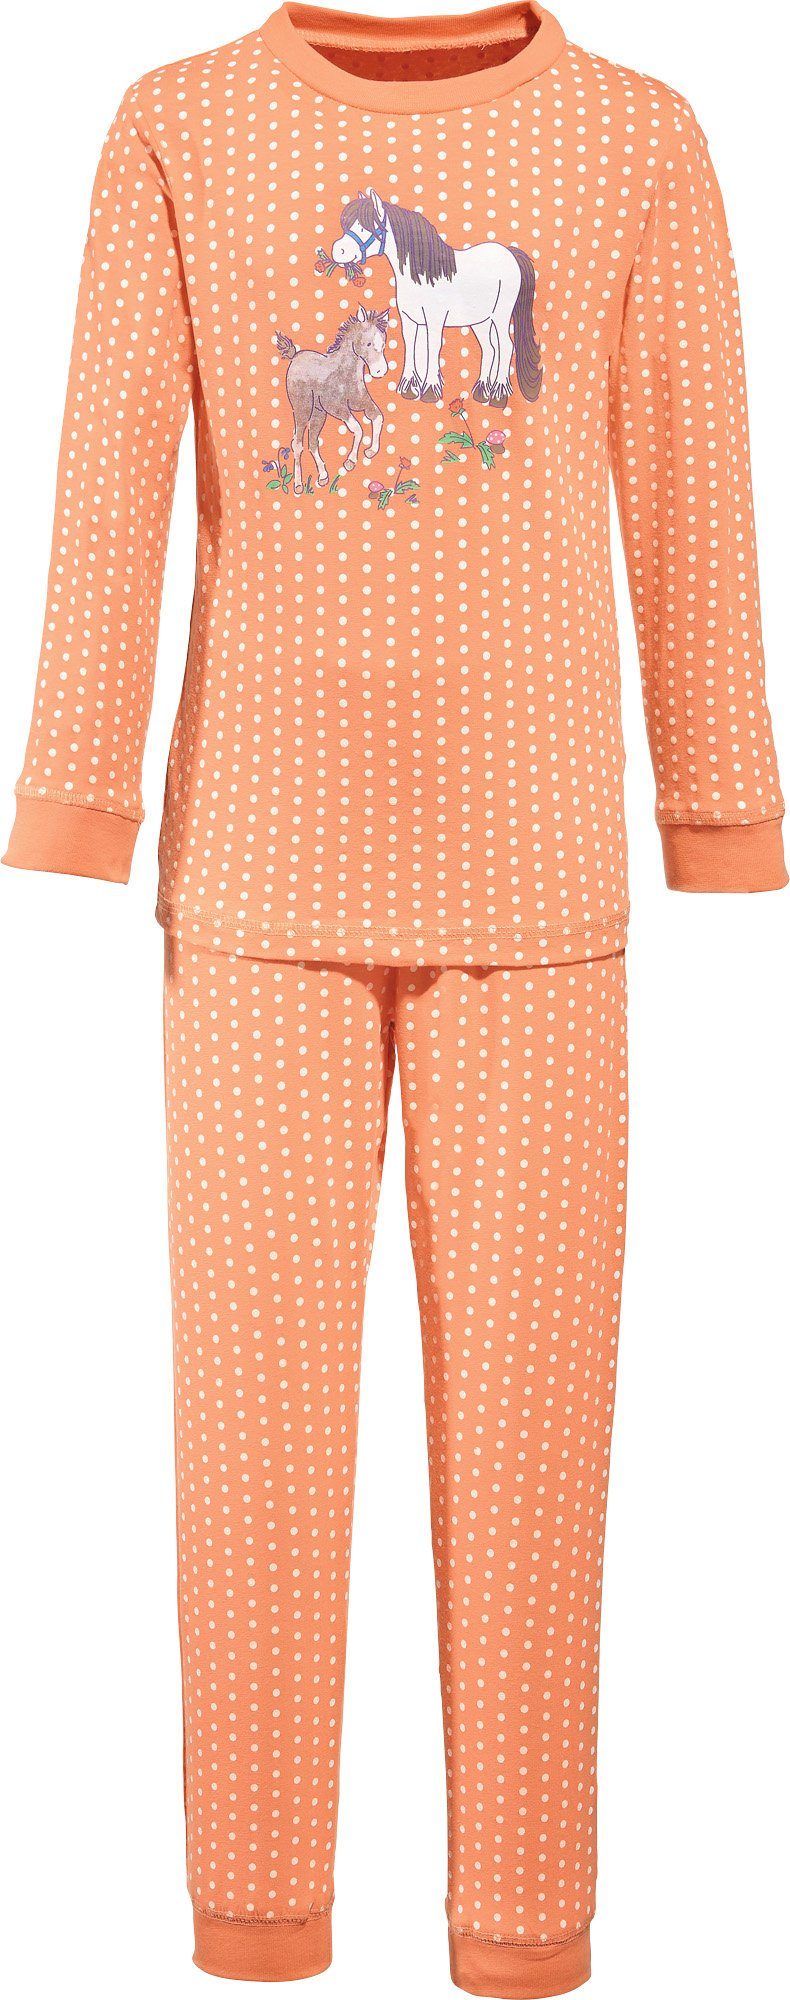 Müller Kinder-Schlafanzug Punkte Erwin Pyjama Single-Jersey